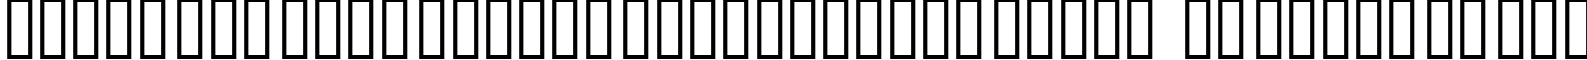 Пример написания шрифтом SKYfontone текста на русском